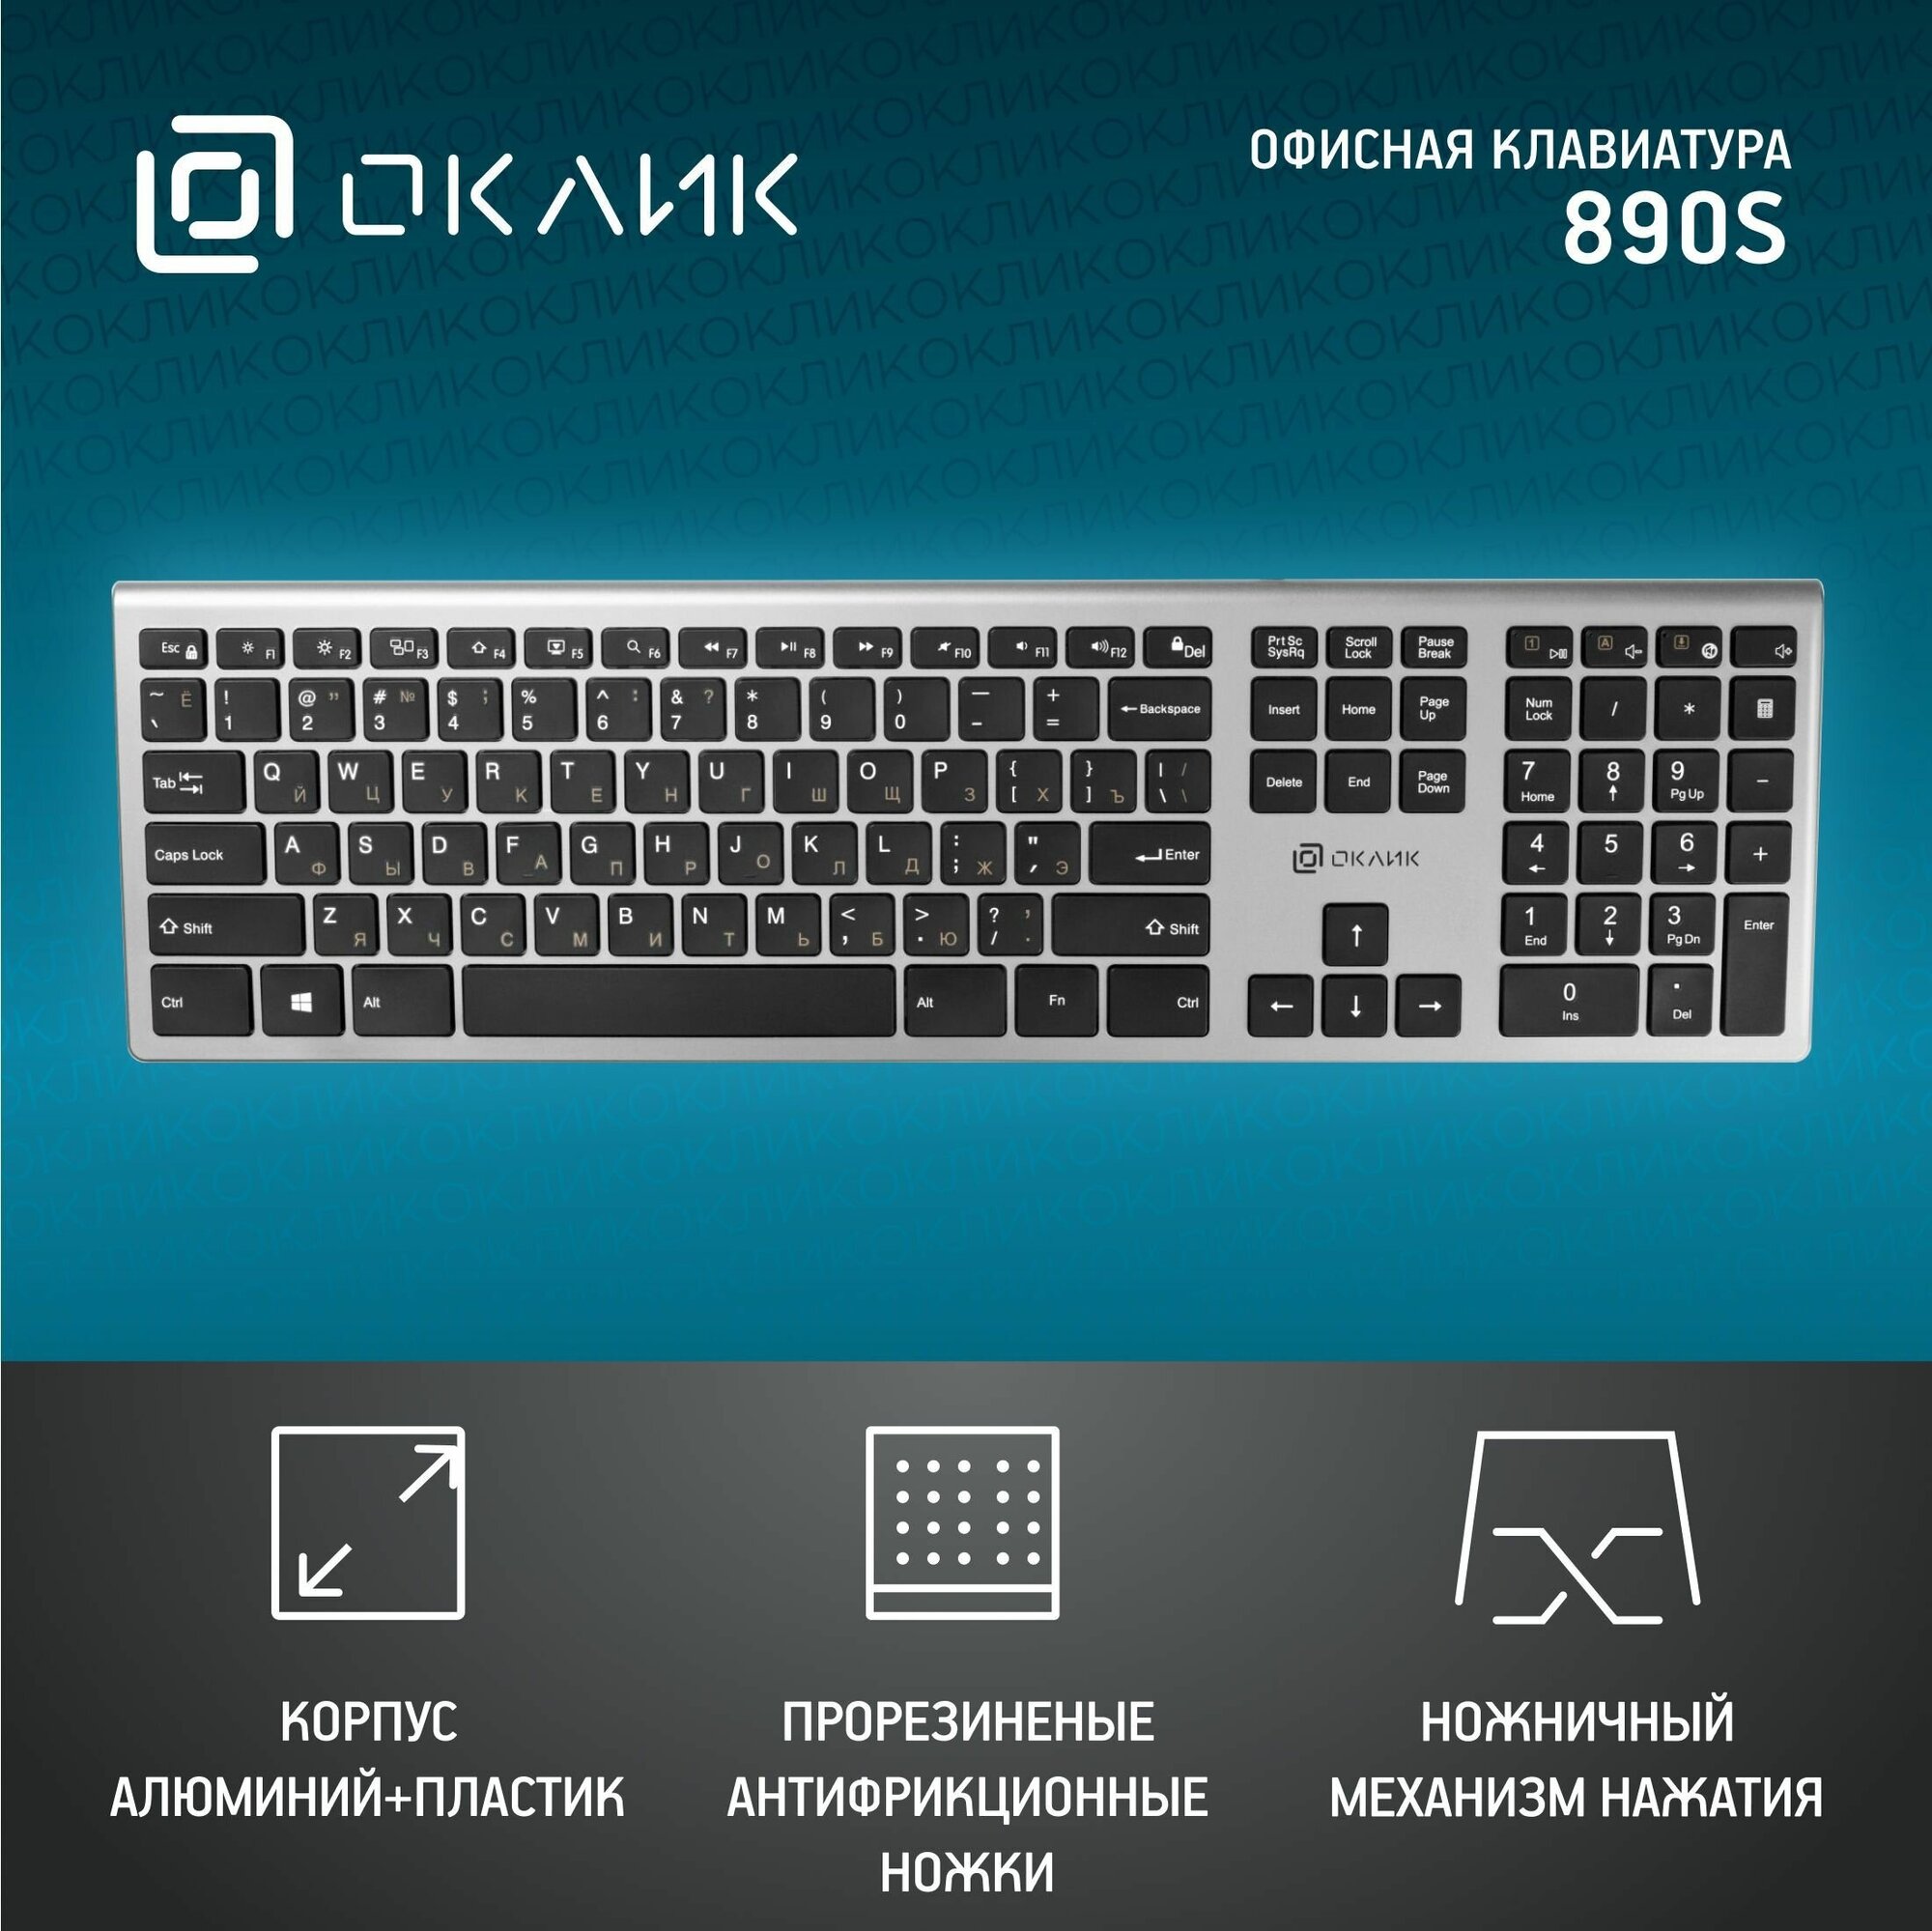 Клавиатура Оклик 890S серый/черный USB slim Multimedia, серебристый, 436.3x23x124.6мм. — купить в интернет-магазине по низкой цене на Яндекс Маркете